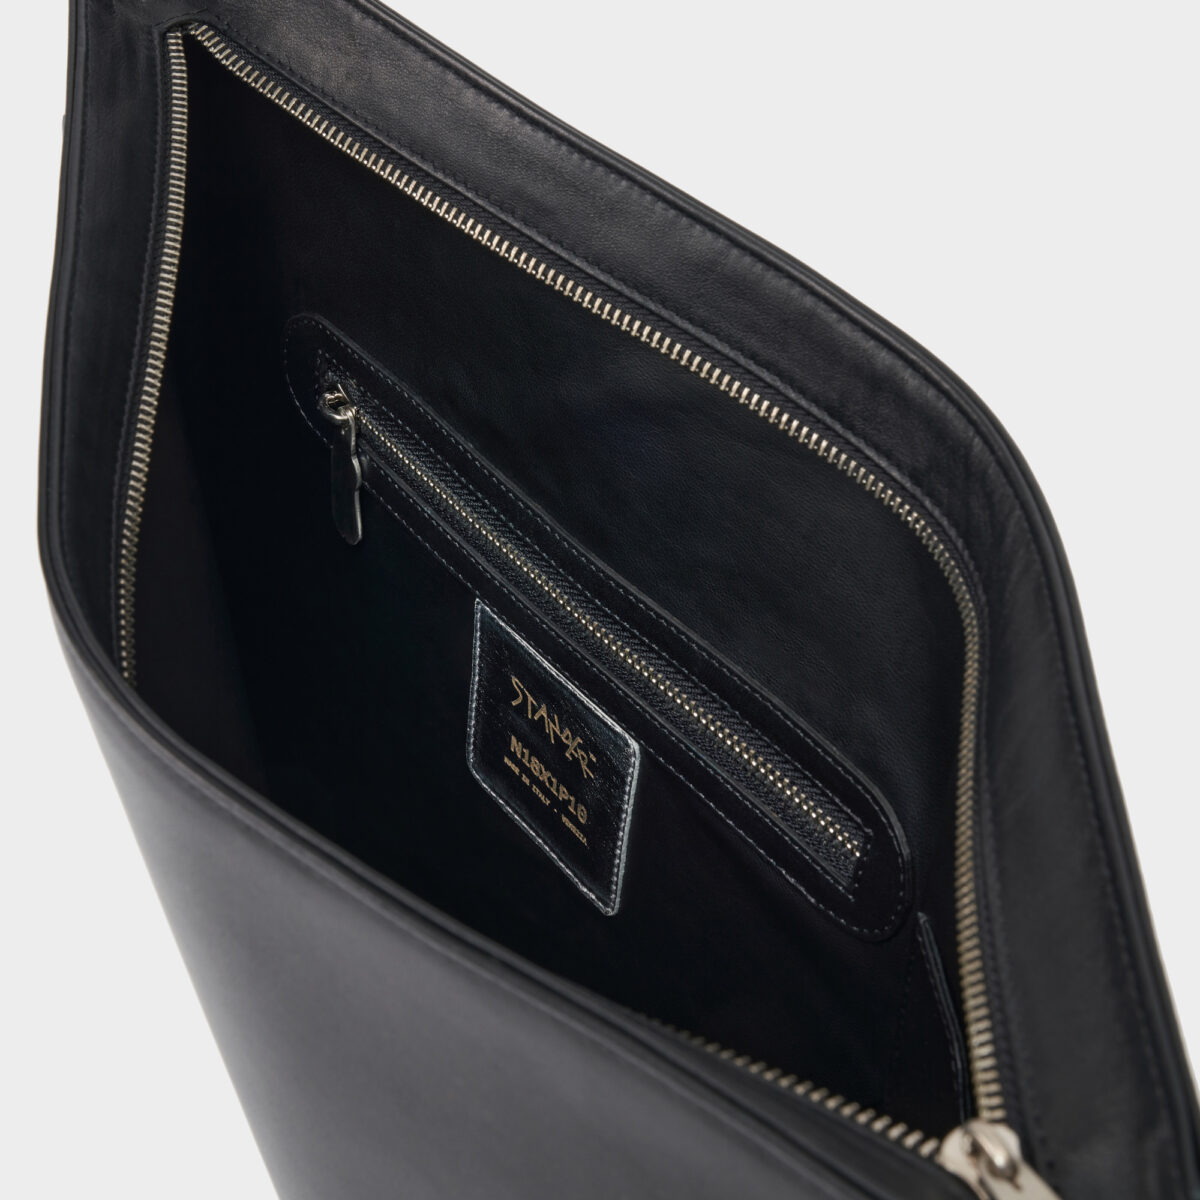 p10-leather-bag-retro